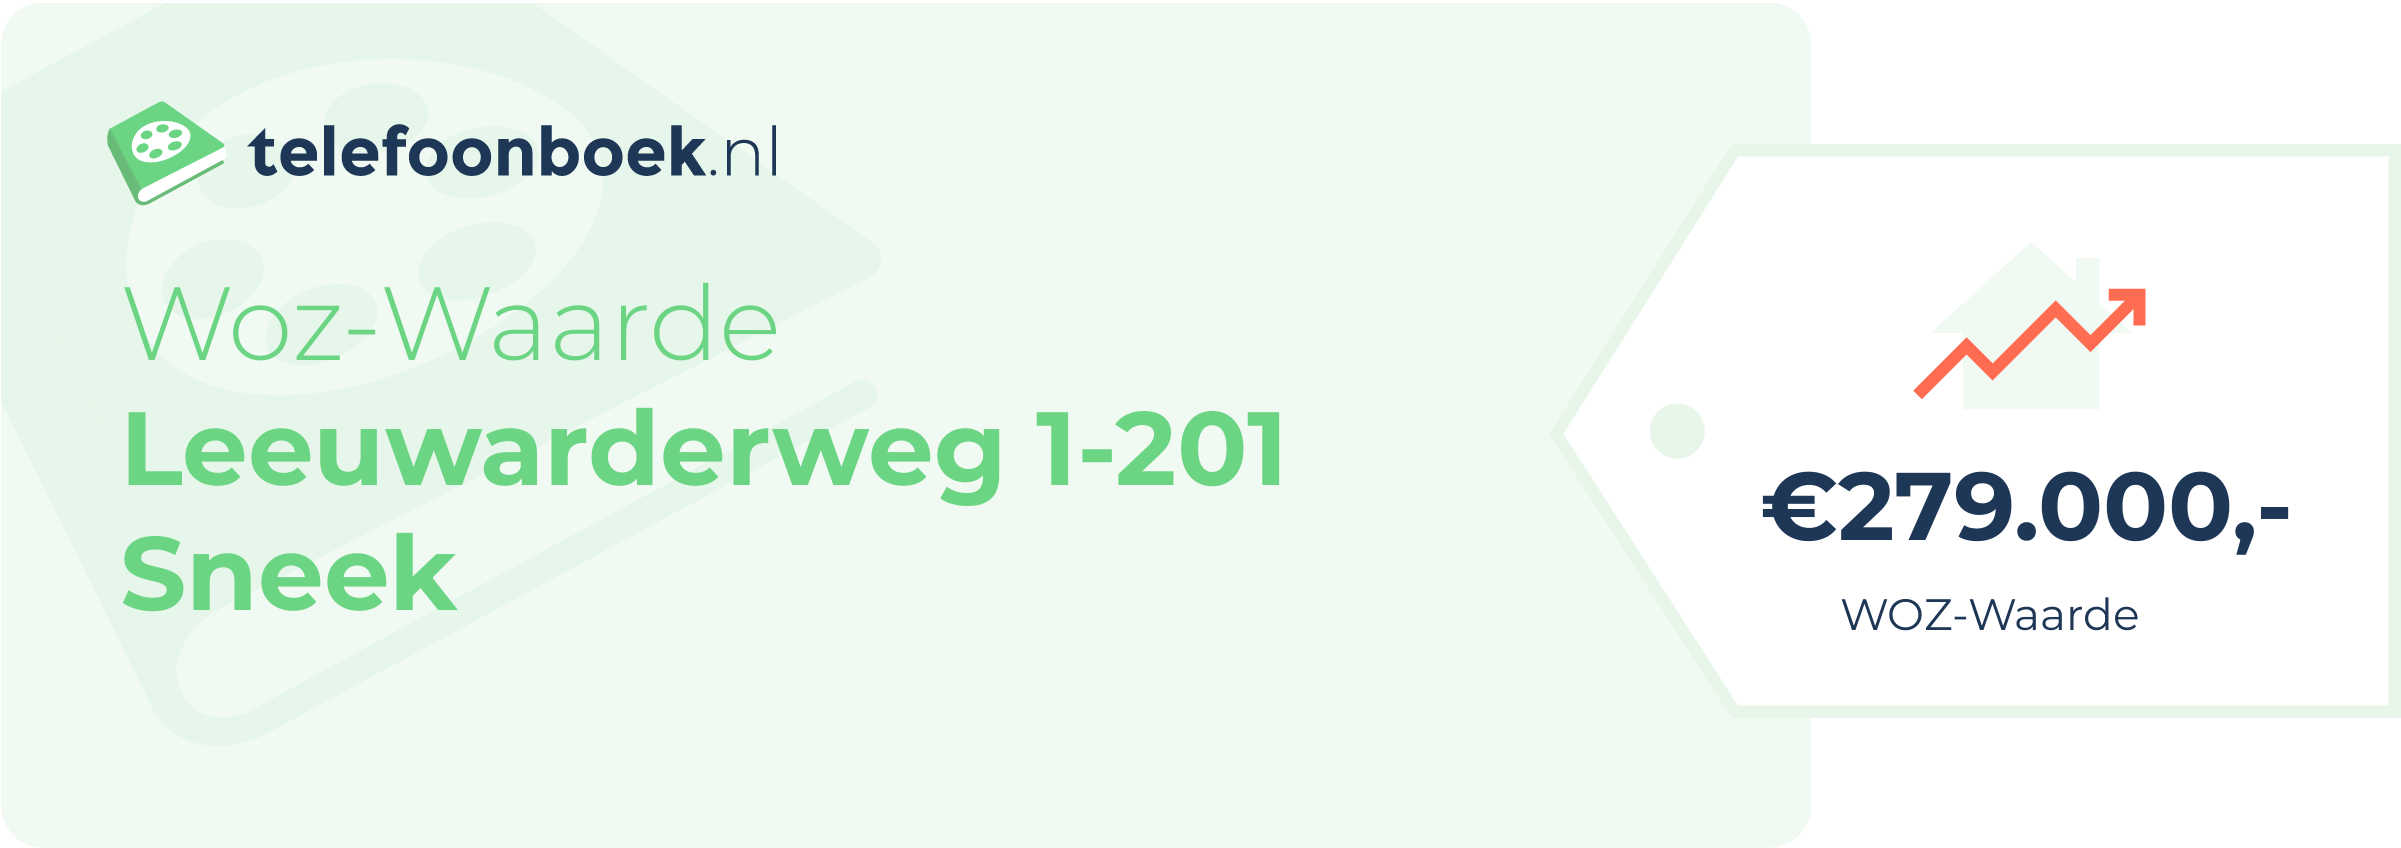 WOZ-waarde Leeuwarderweg 1-201 Sneek